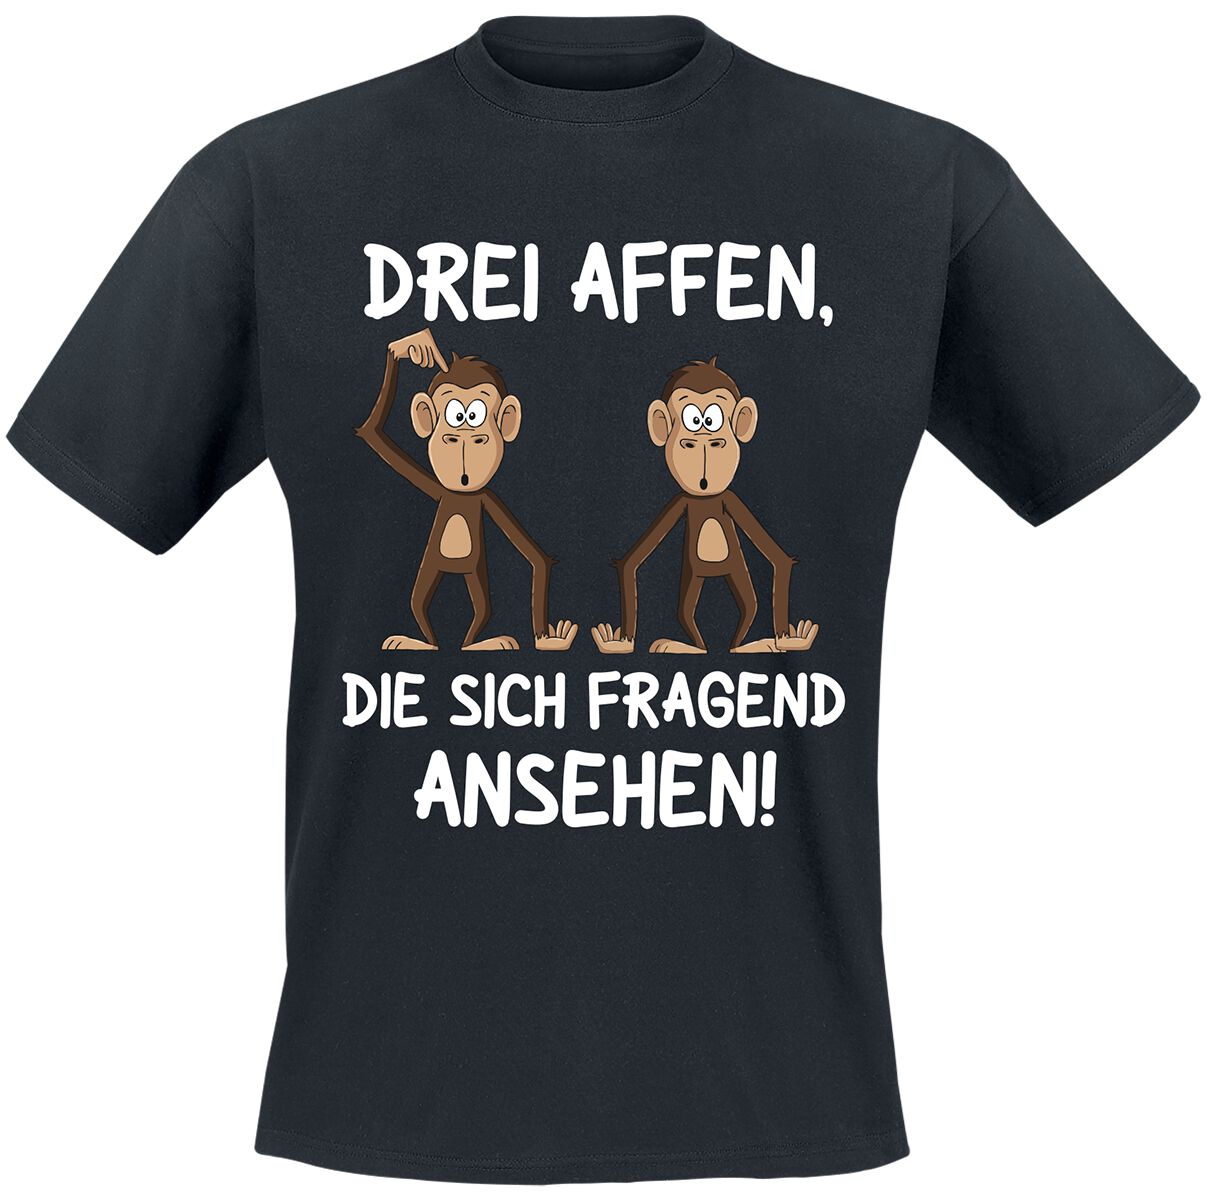 Tierisch Drei Affen, die sich fragend ansehen! T-Shirt schwarz in XXL